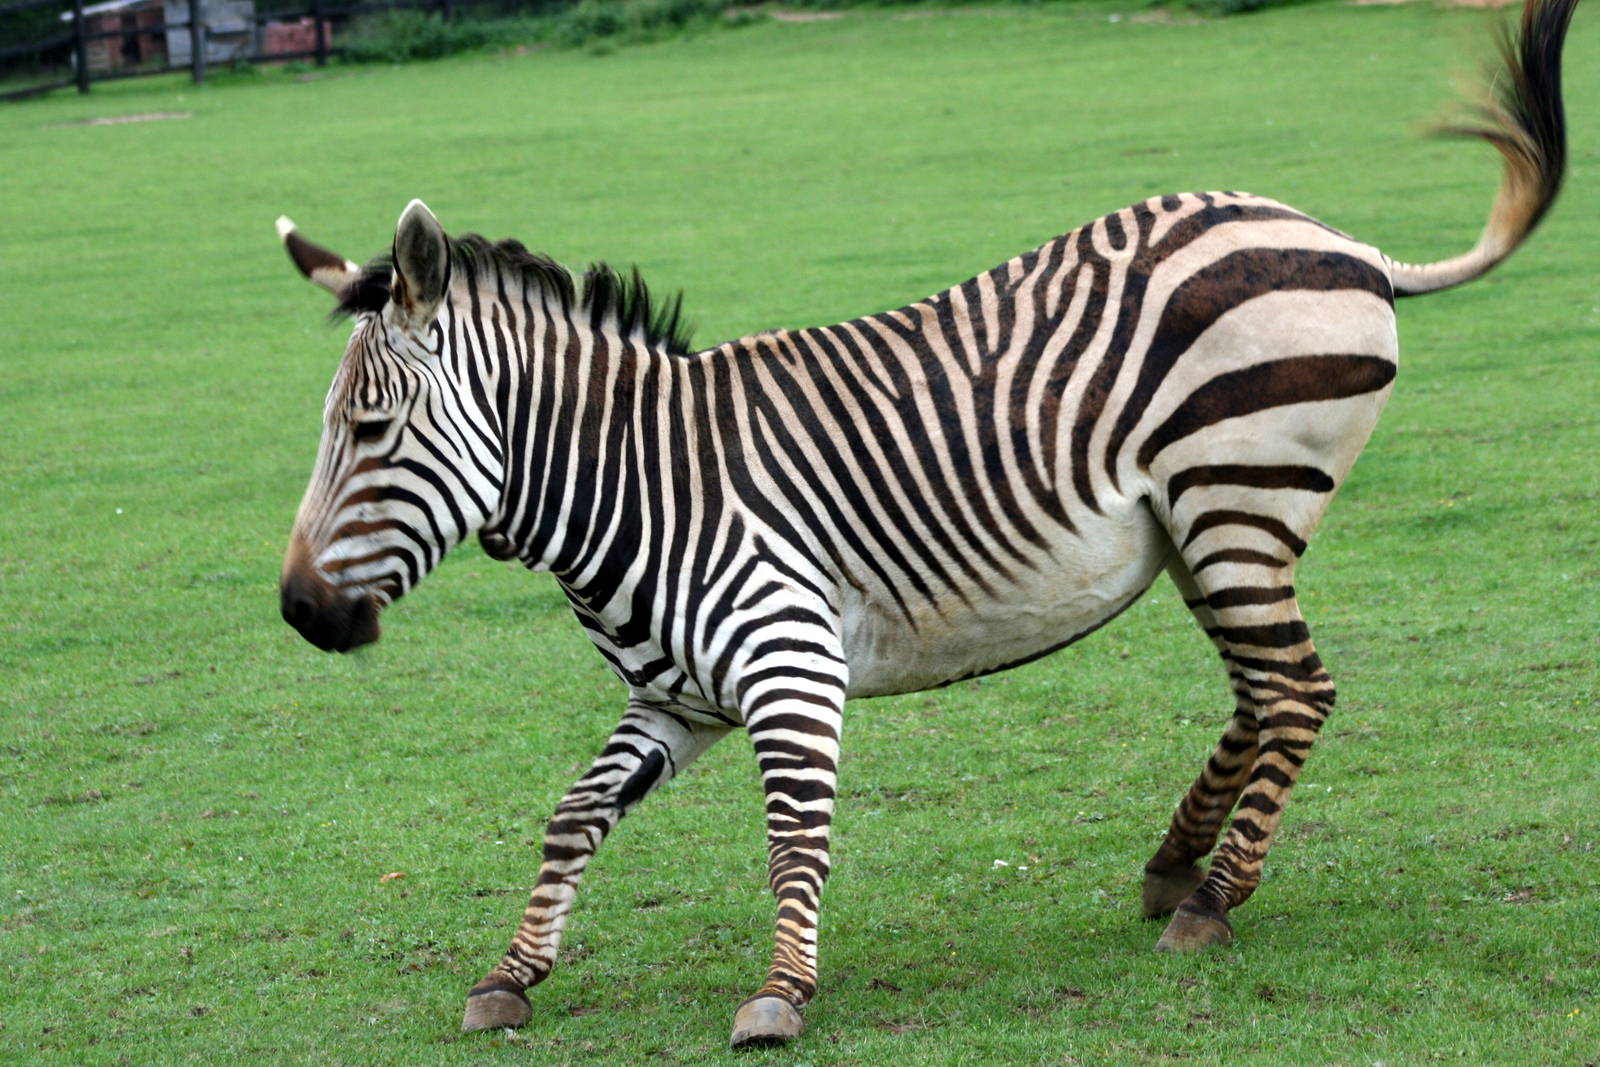 Zebra in the photo